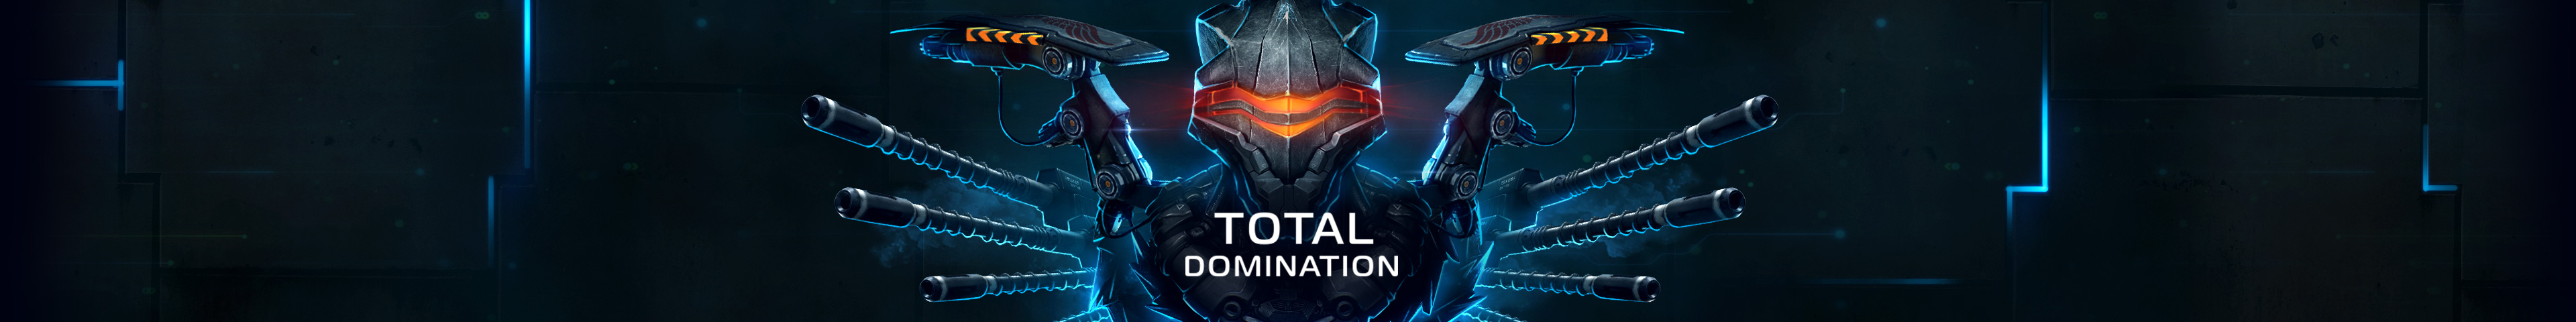 Total Domination - EN